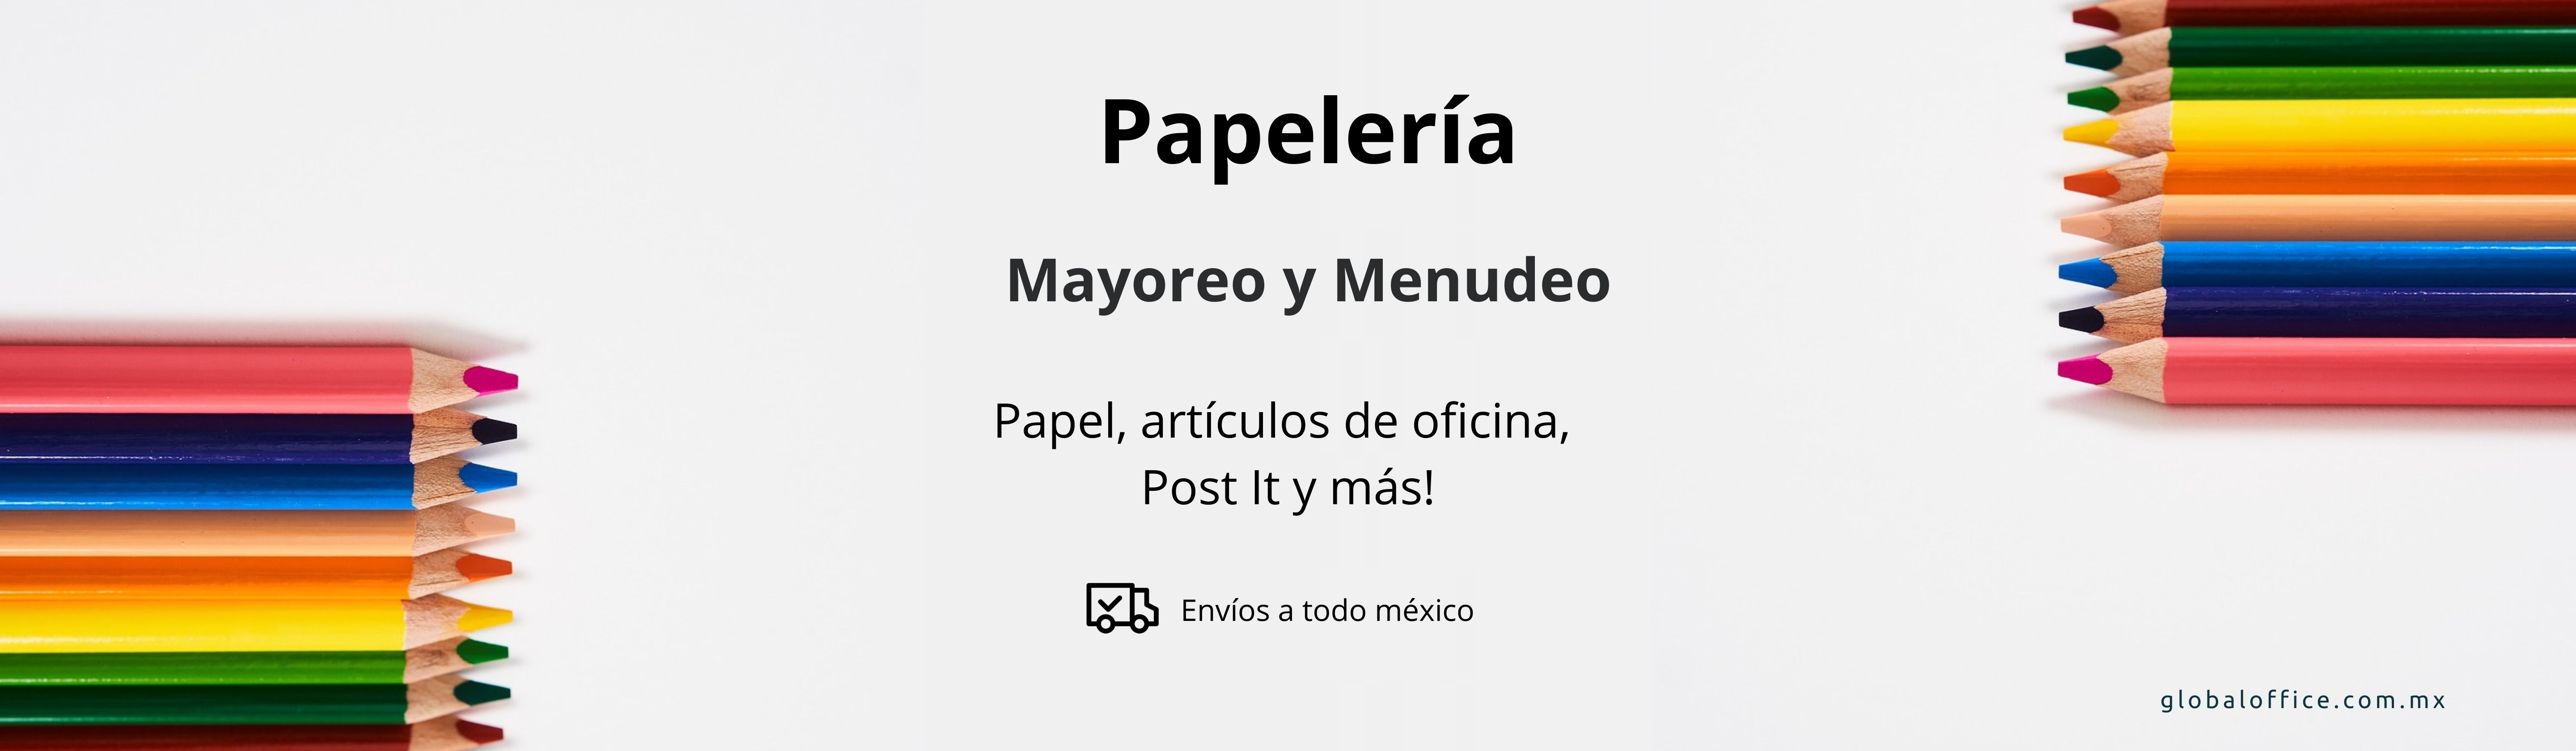 PAPELERIA Y ART. DE OFICINA